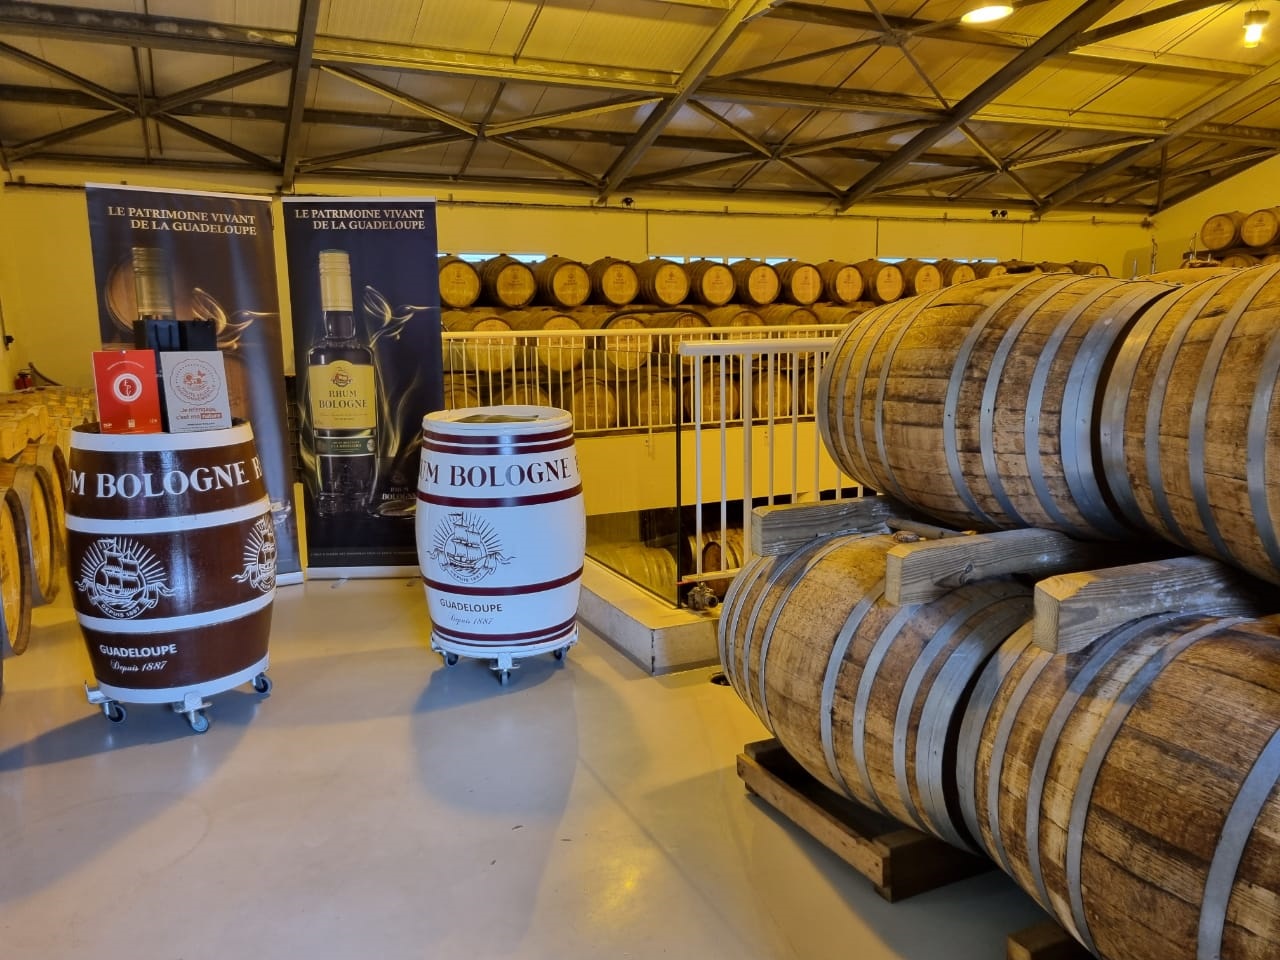     Nouvelle distinction pour la distillerie Bologne 

